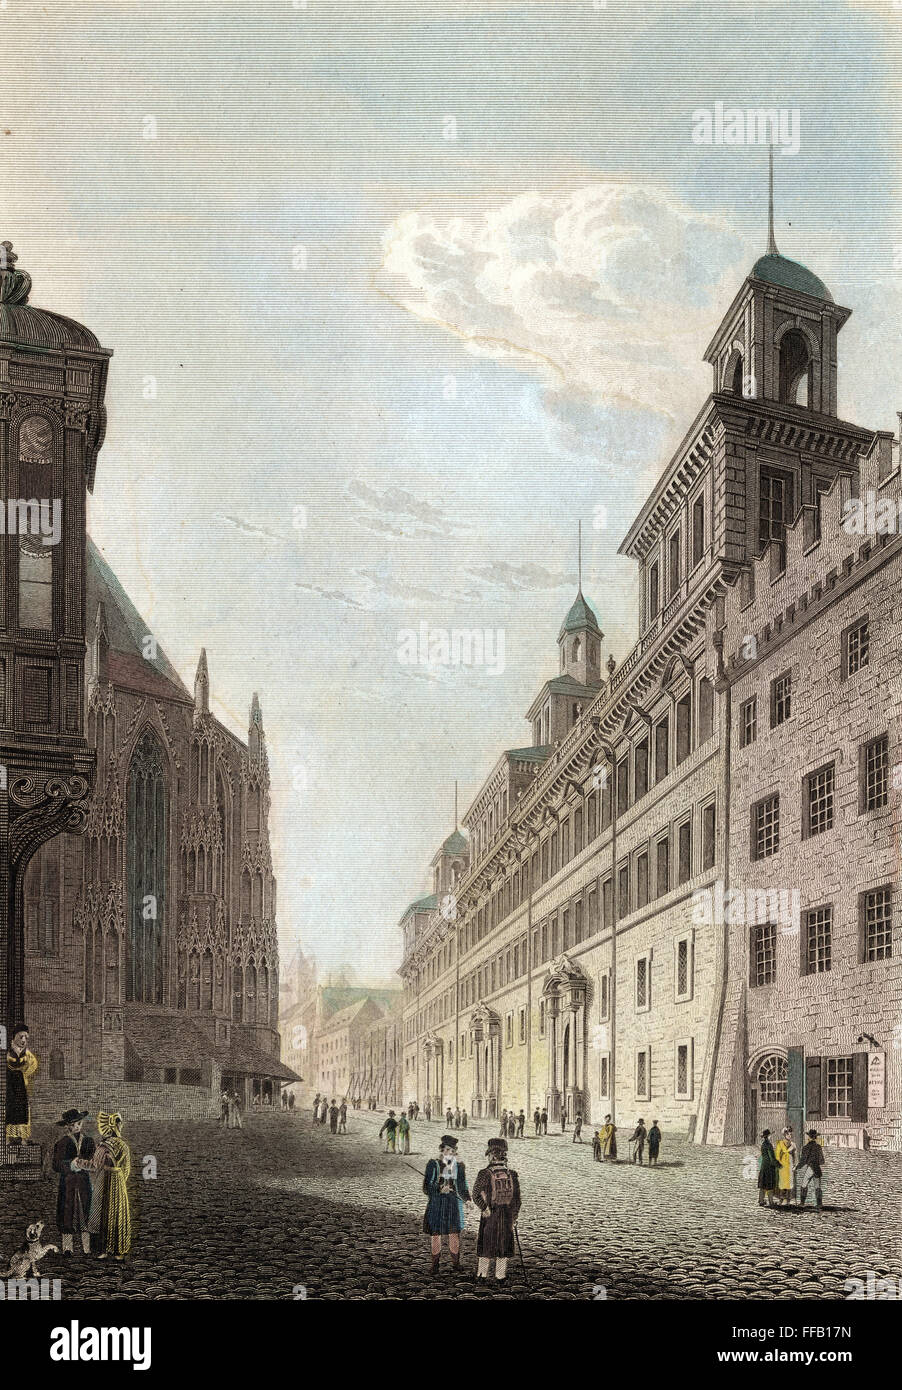 DEUTSCHLAND: NÜRNBERG, 1822. /nThe Fassadenfront (Gildehaus) und Sebalder Kirche in Nürnberg. Stahlstich, 1822, nach einer Zeichnung von Robert Batty. Stockfoto